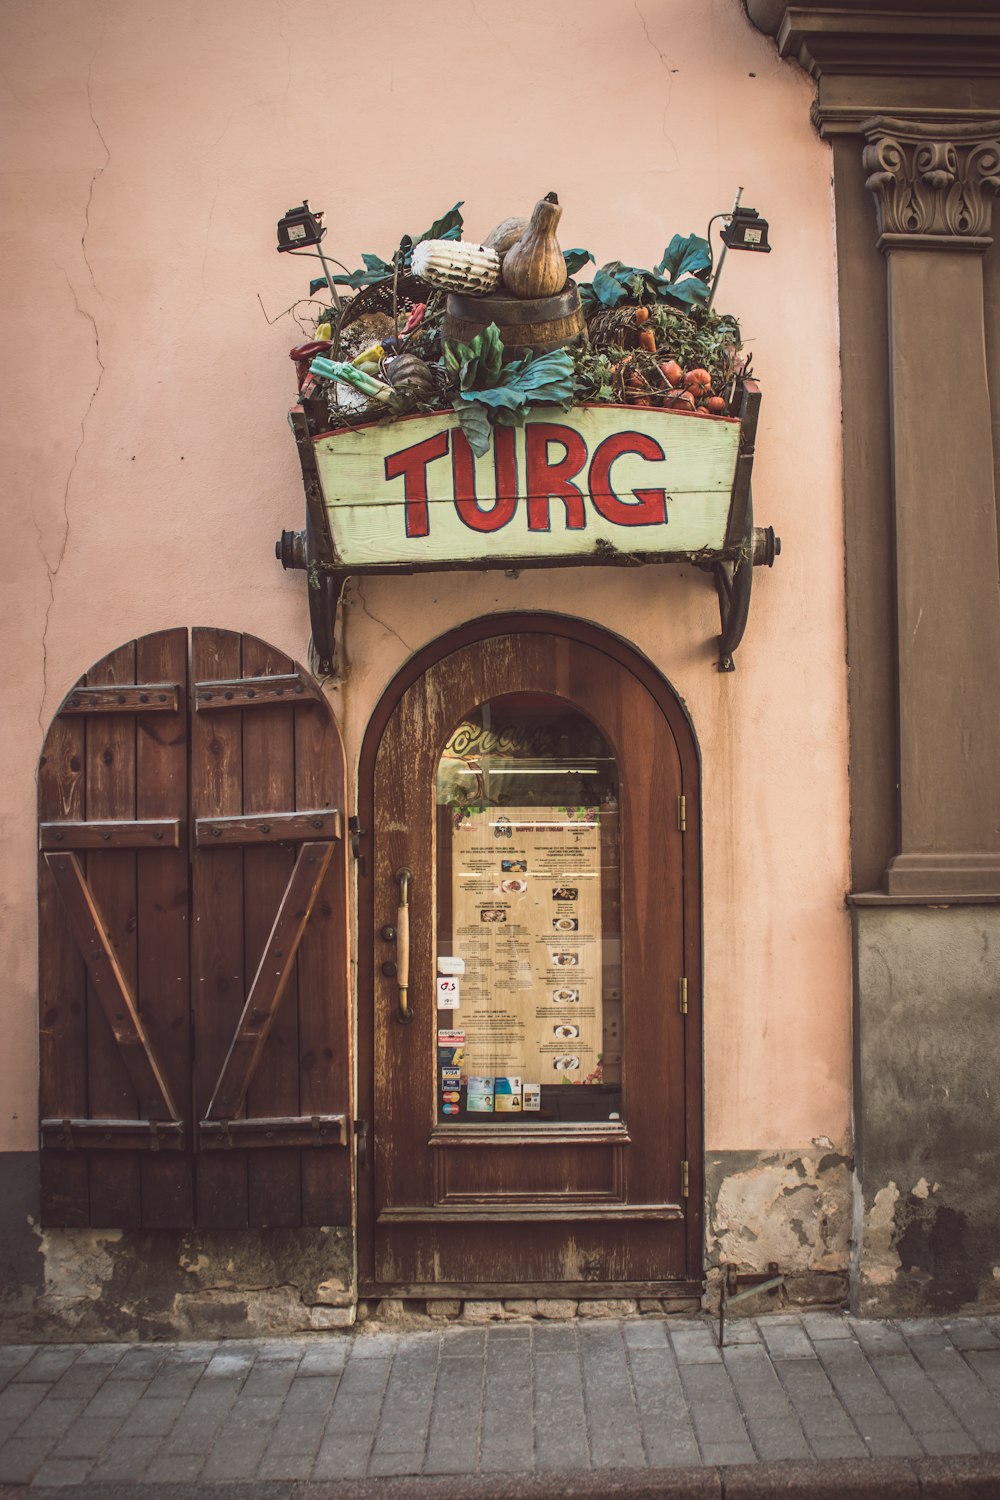 Turg signage